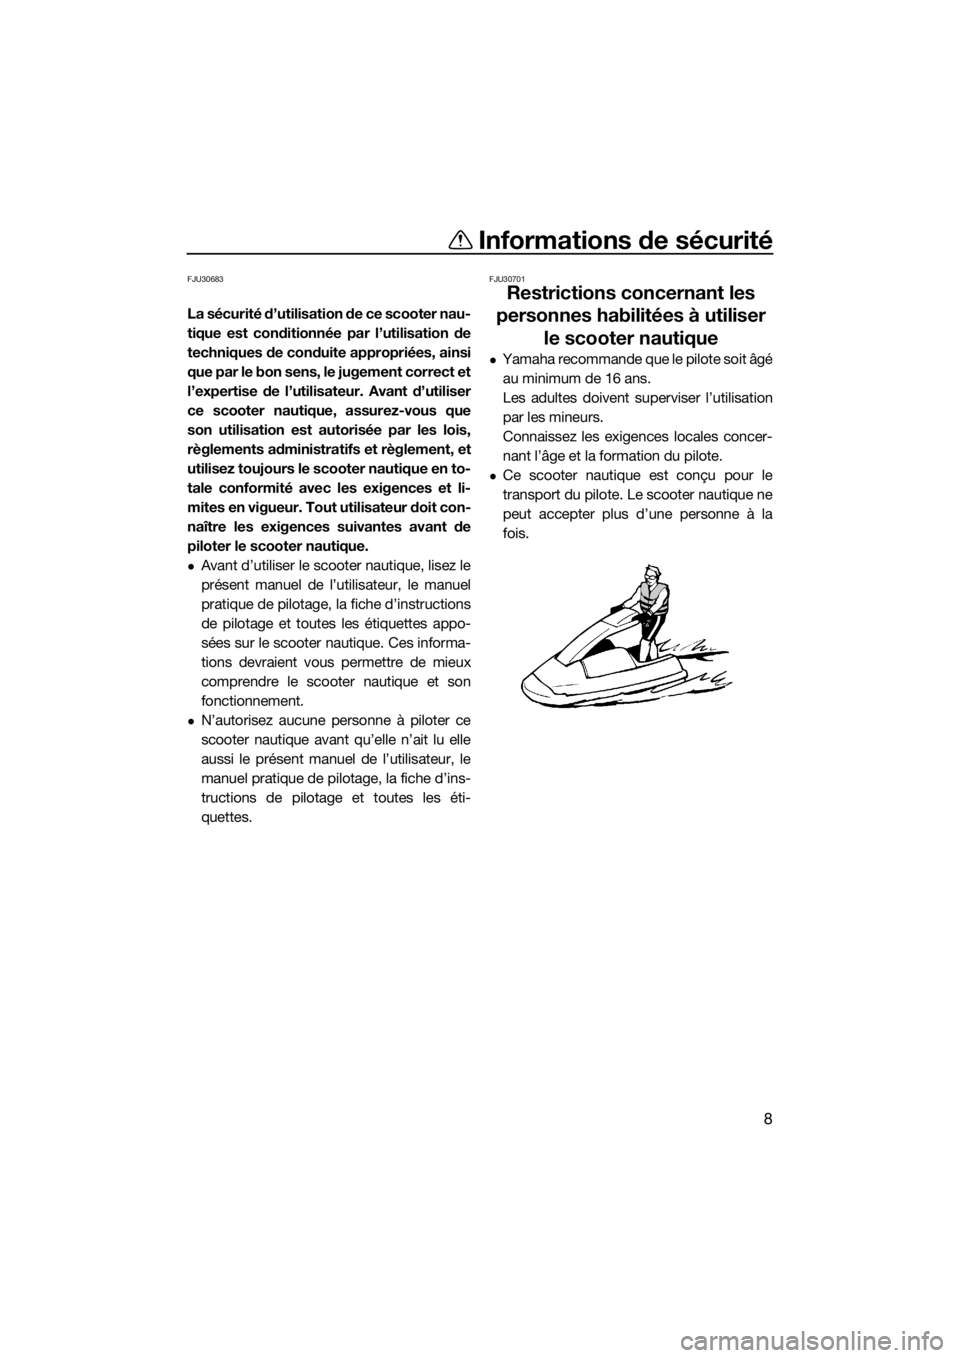 YAMAHA SUPERJET 2017  Notices Demploi (in French) Informations de sécurité
8
FJU30683
La sécurité d’utilisation de ce scooter nau-
tique est conditionnée par l’utilisation de
techniques de conduite appropriées, ainsi
que par le bon sens, le